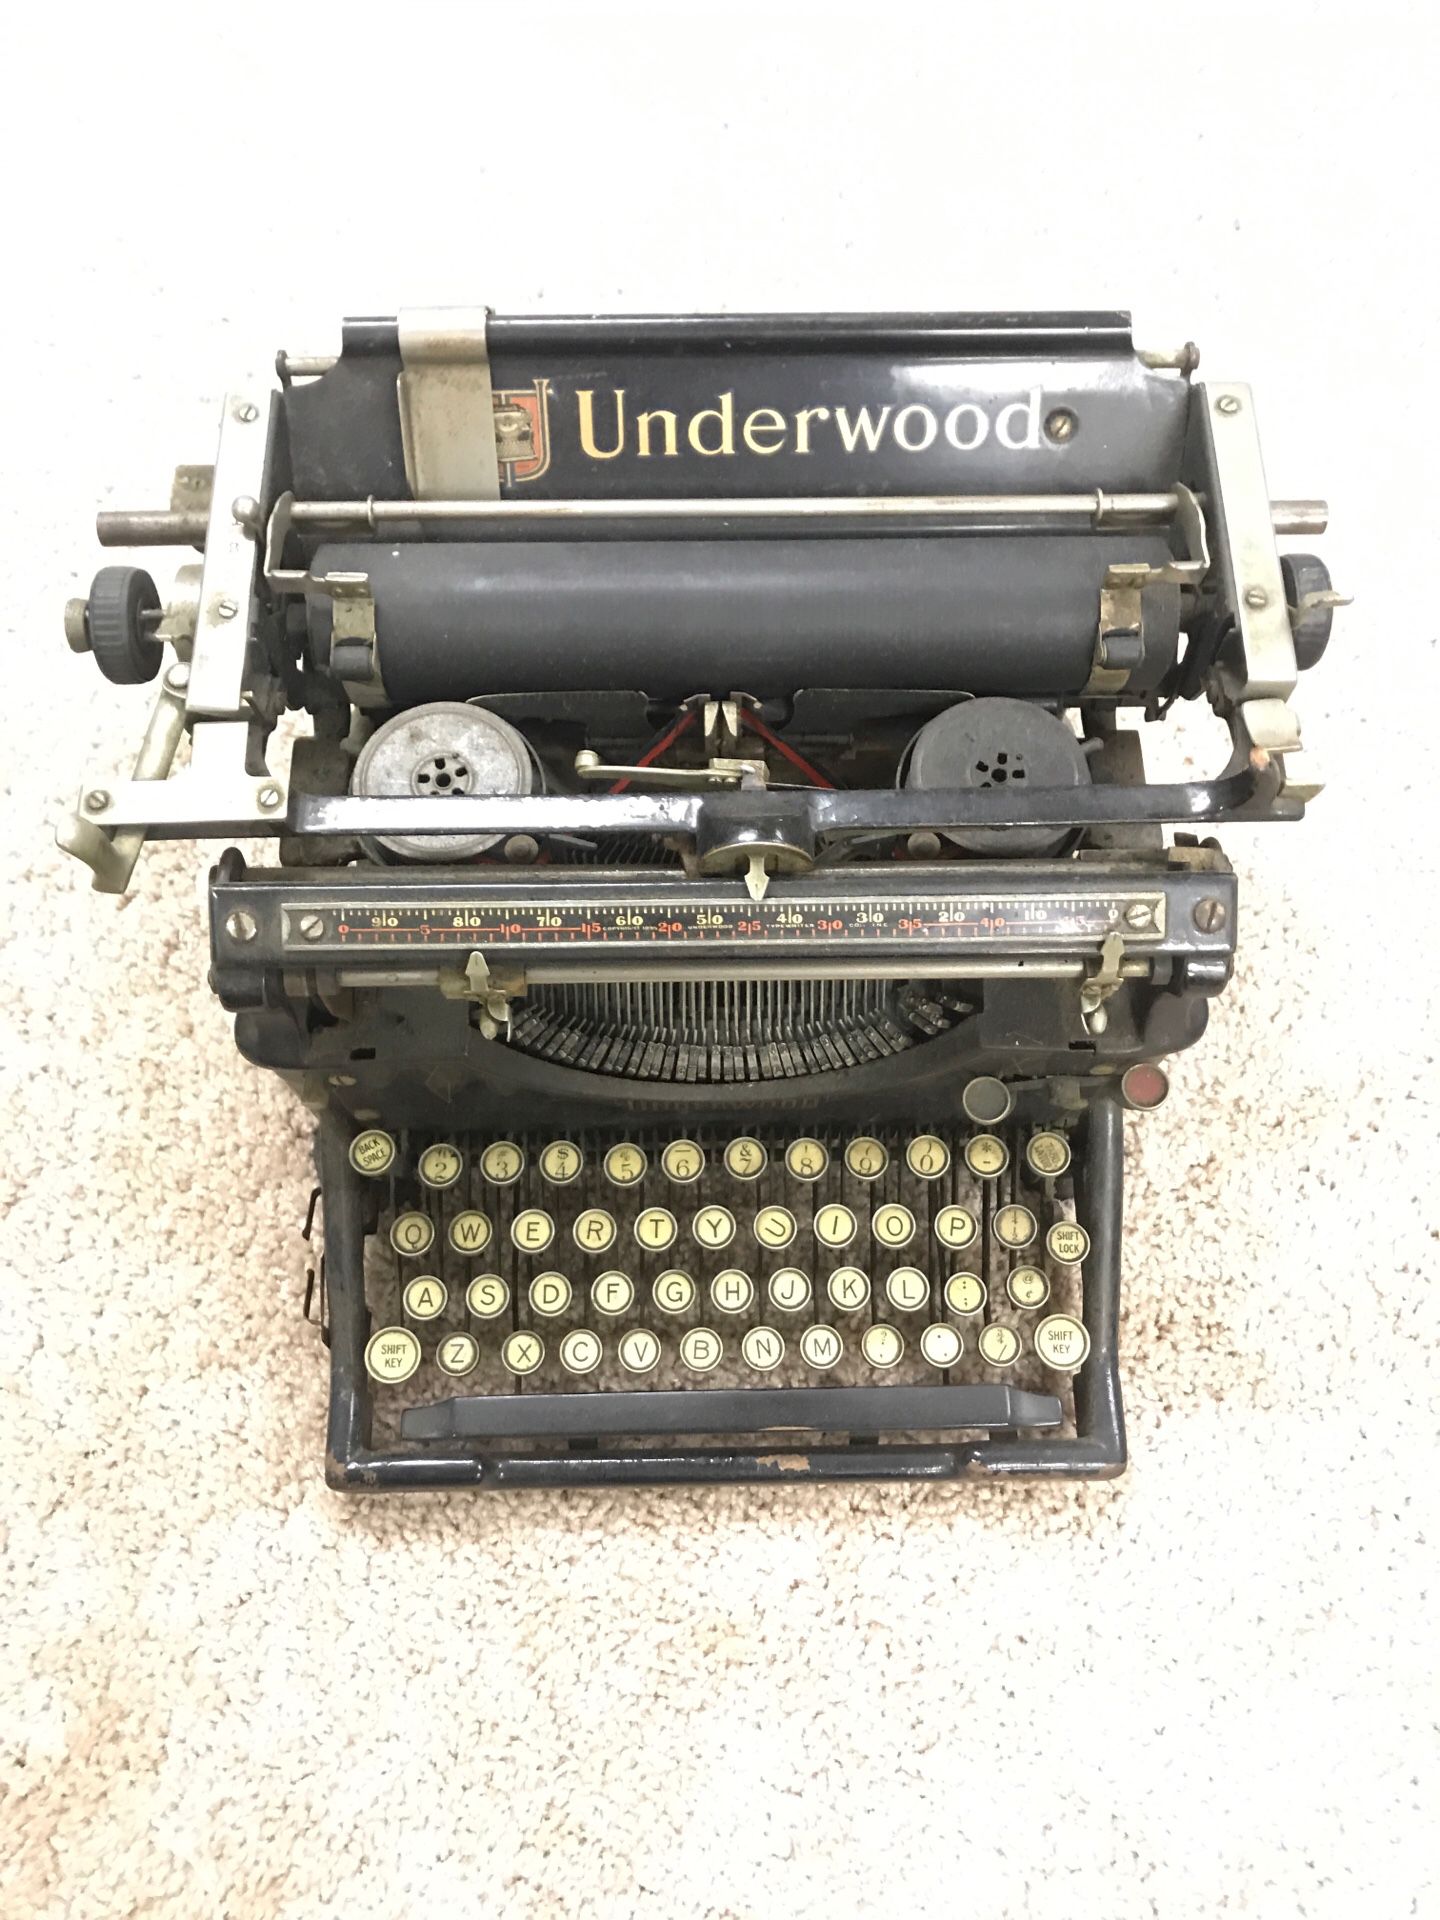 Vintage Underwood No. 5 Typewriter.